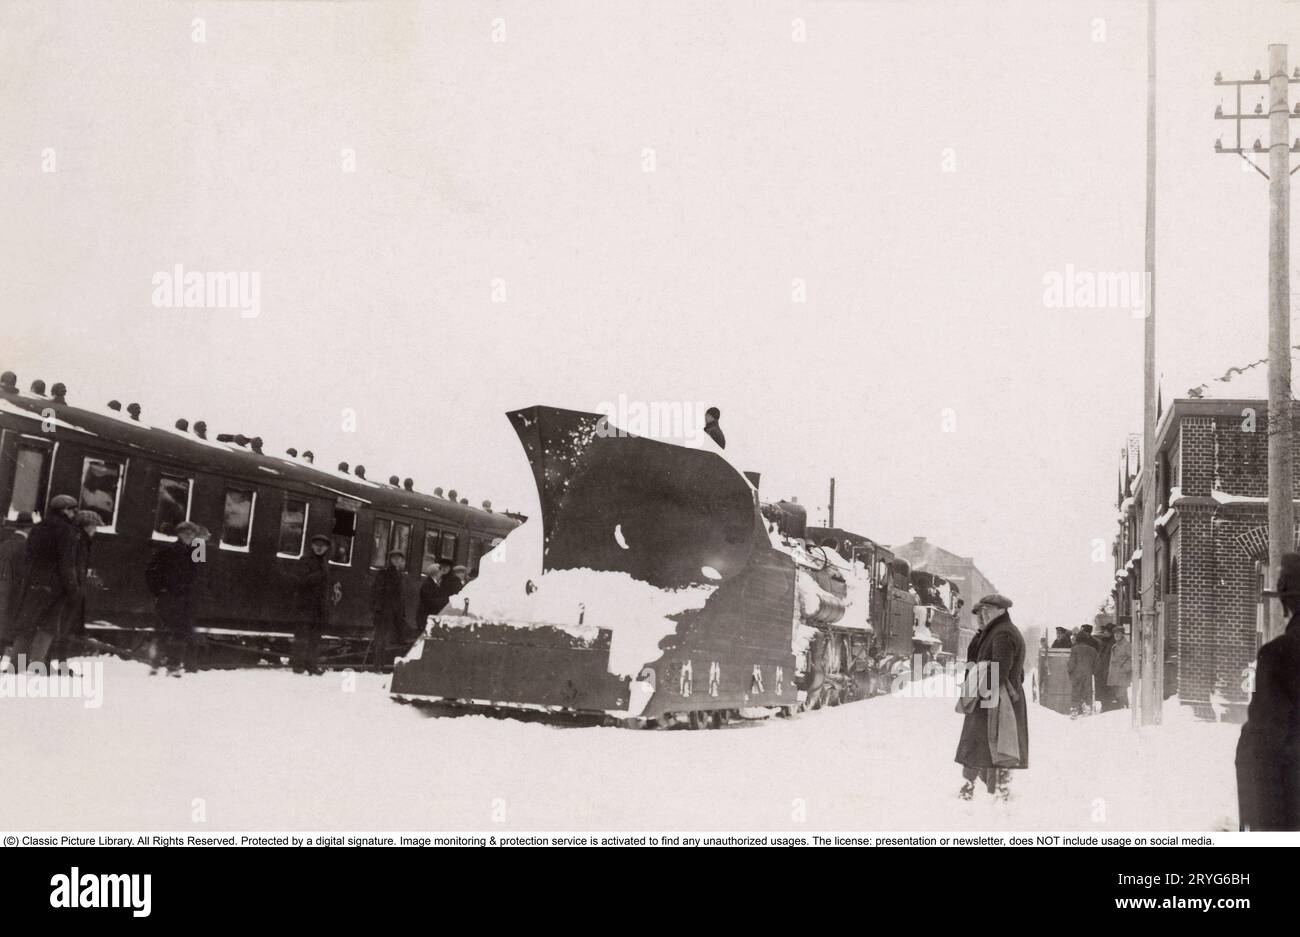 Tempesta di neve negli anni '1920 Una tempesta di neve ha colpito la Svezia meridionale e la regione della Scania, e qui si trova il treno innevato della costa occidentale alla stazione di Svalöv nel febbraio 1929. Tuttavia, la prontezza delle ferrovie statali è alta e davanti alla locomotiva a vapore è montato un vomere da neve di un modello più grande, che allontana la neve dai binari di fronte al treno. Sulle piattaforme, la gente cammina nella neve alta. Foto Stock